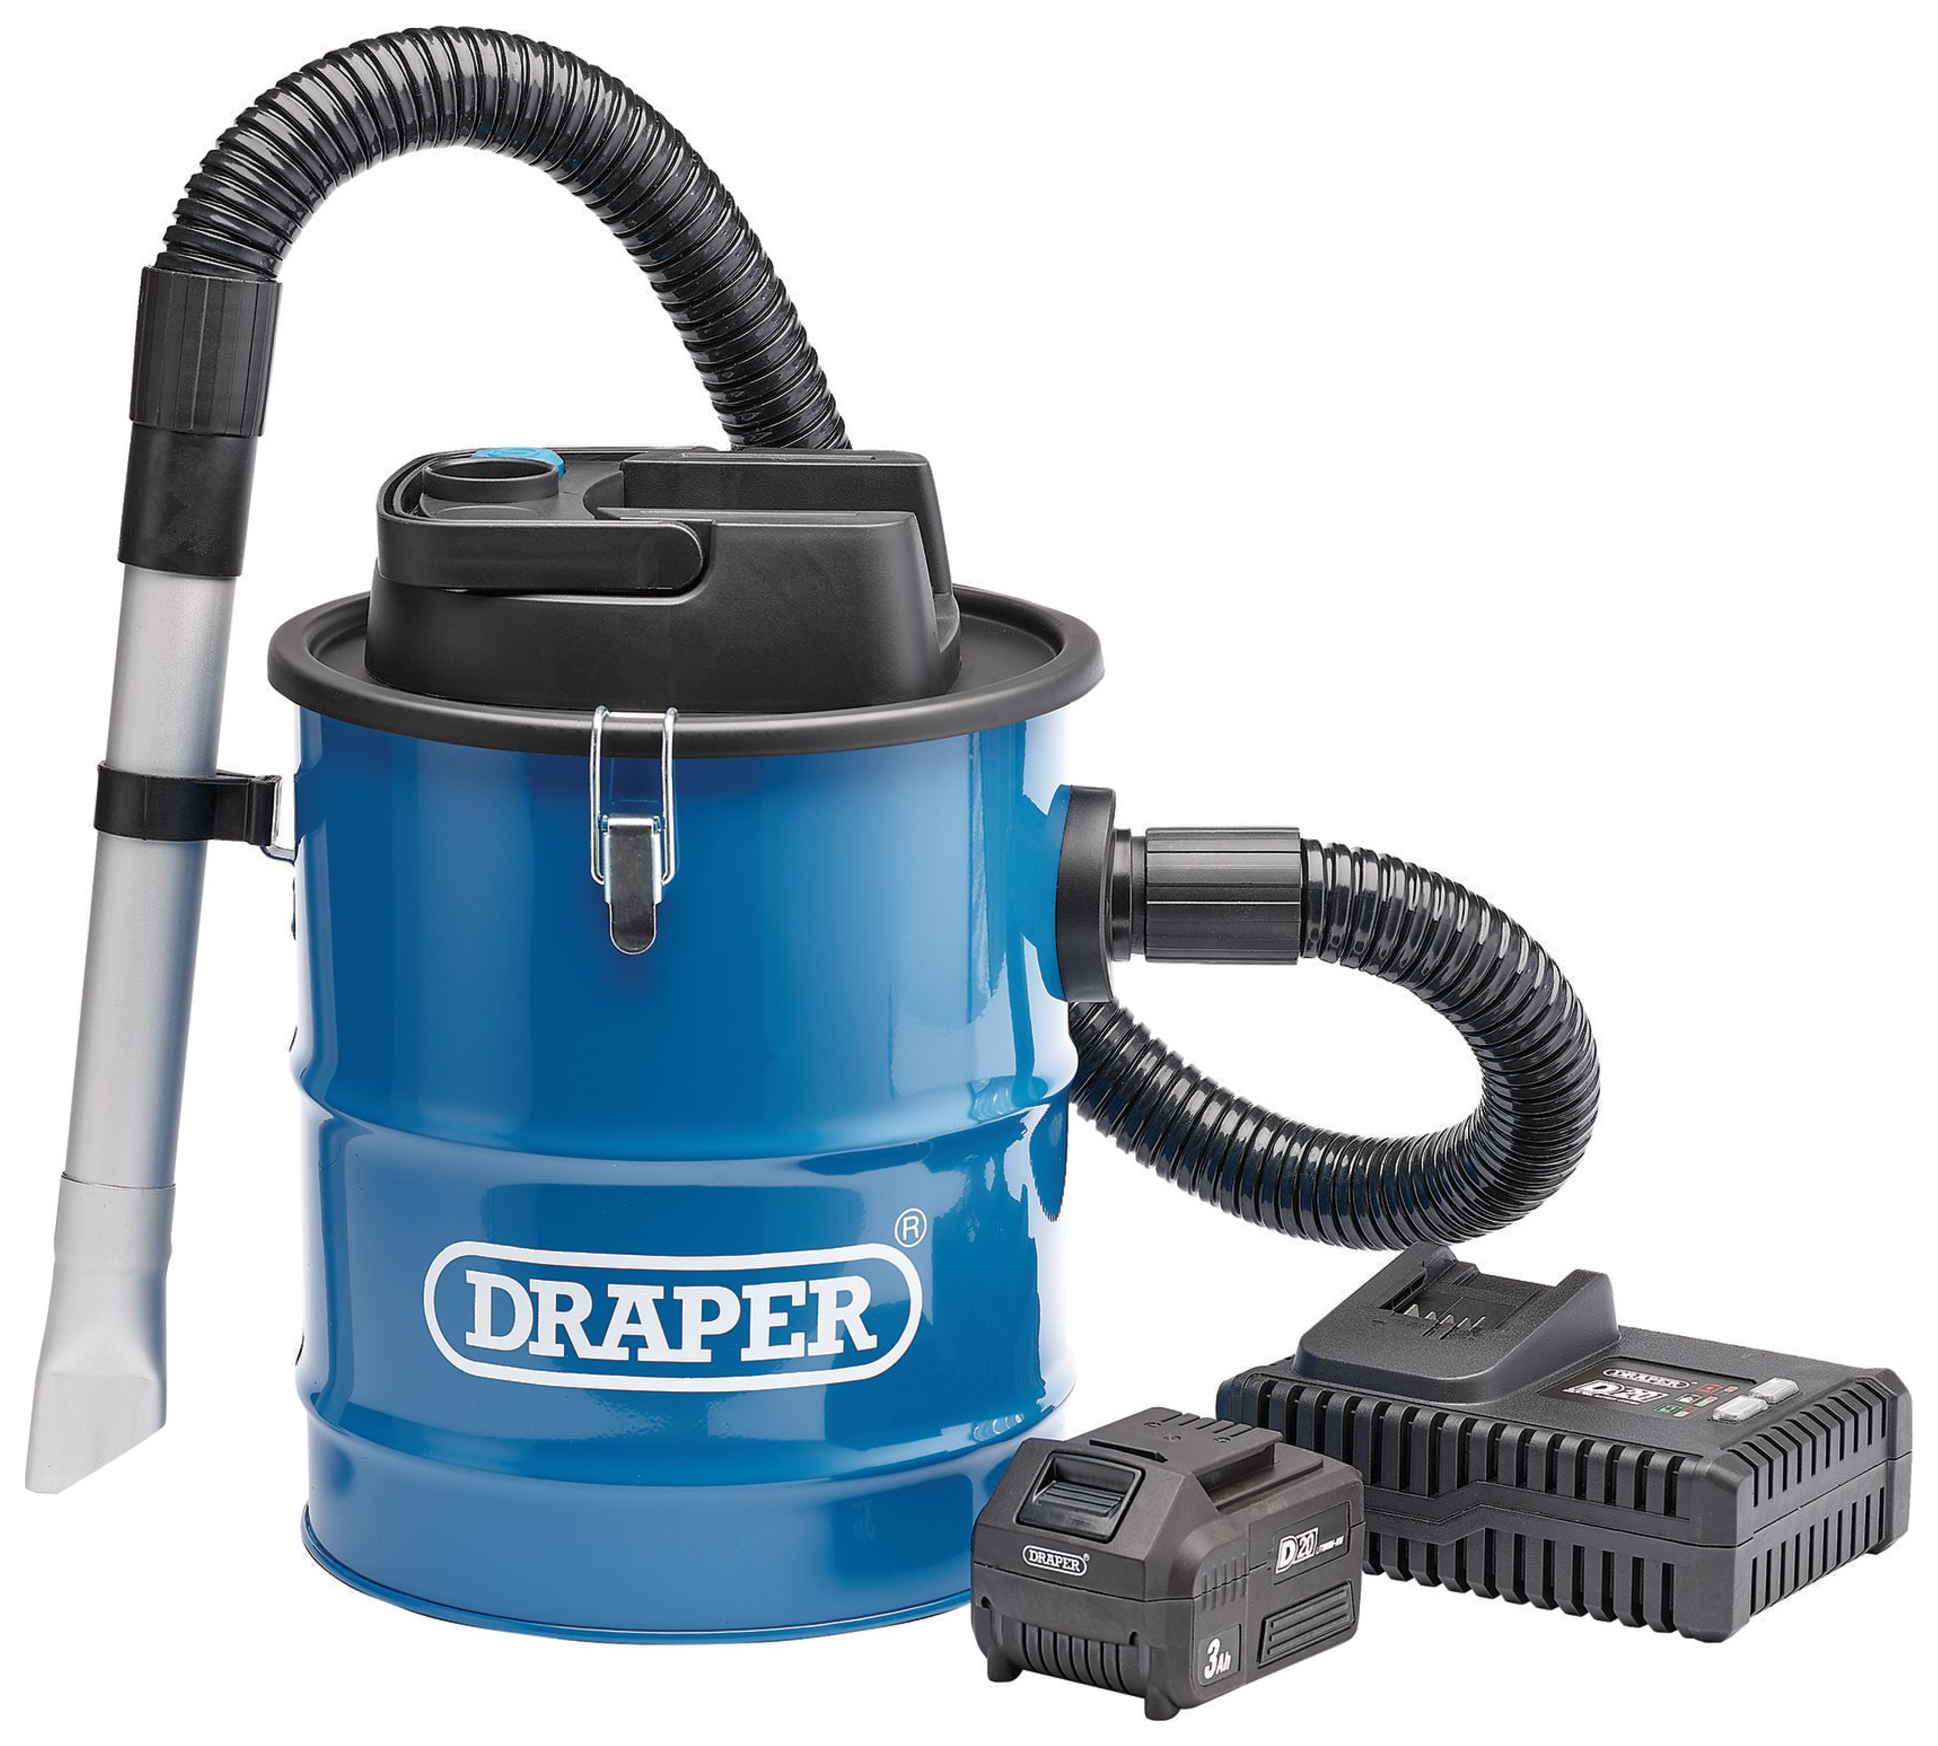 Draper D20 Cordless 1 x 3.0Ah 12L Ash Vacuum Cleaner - 20V